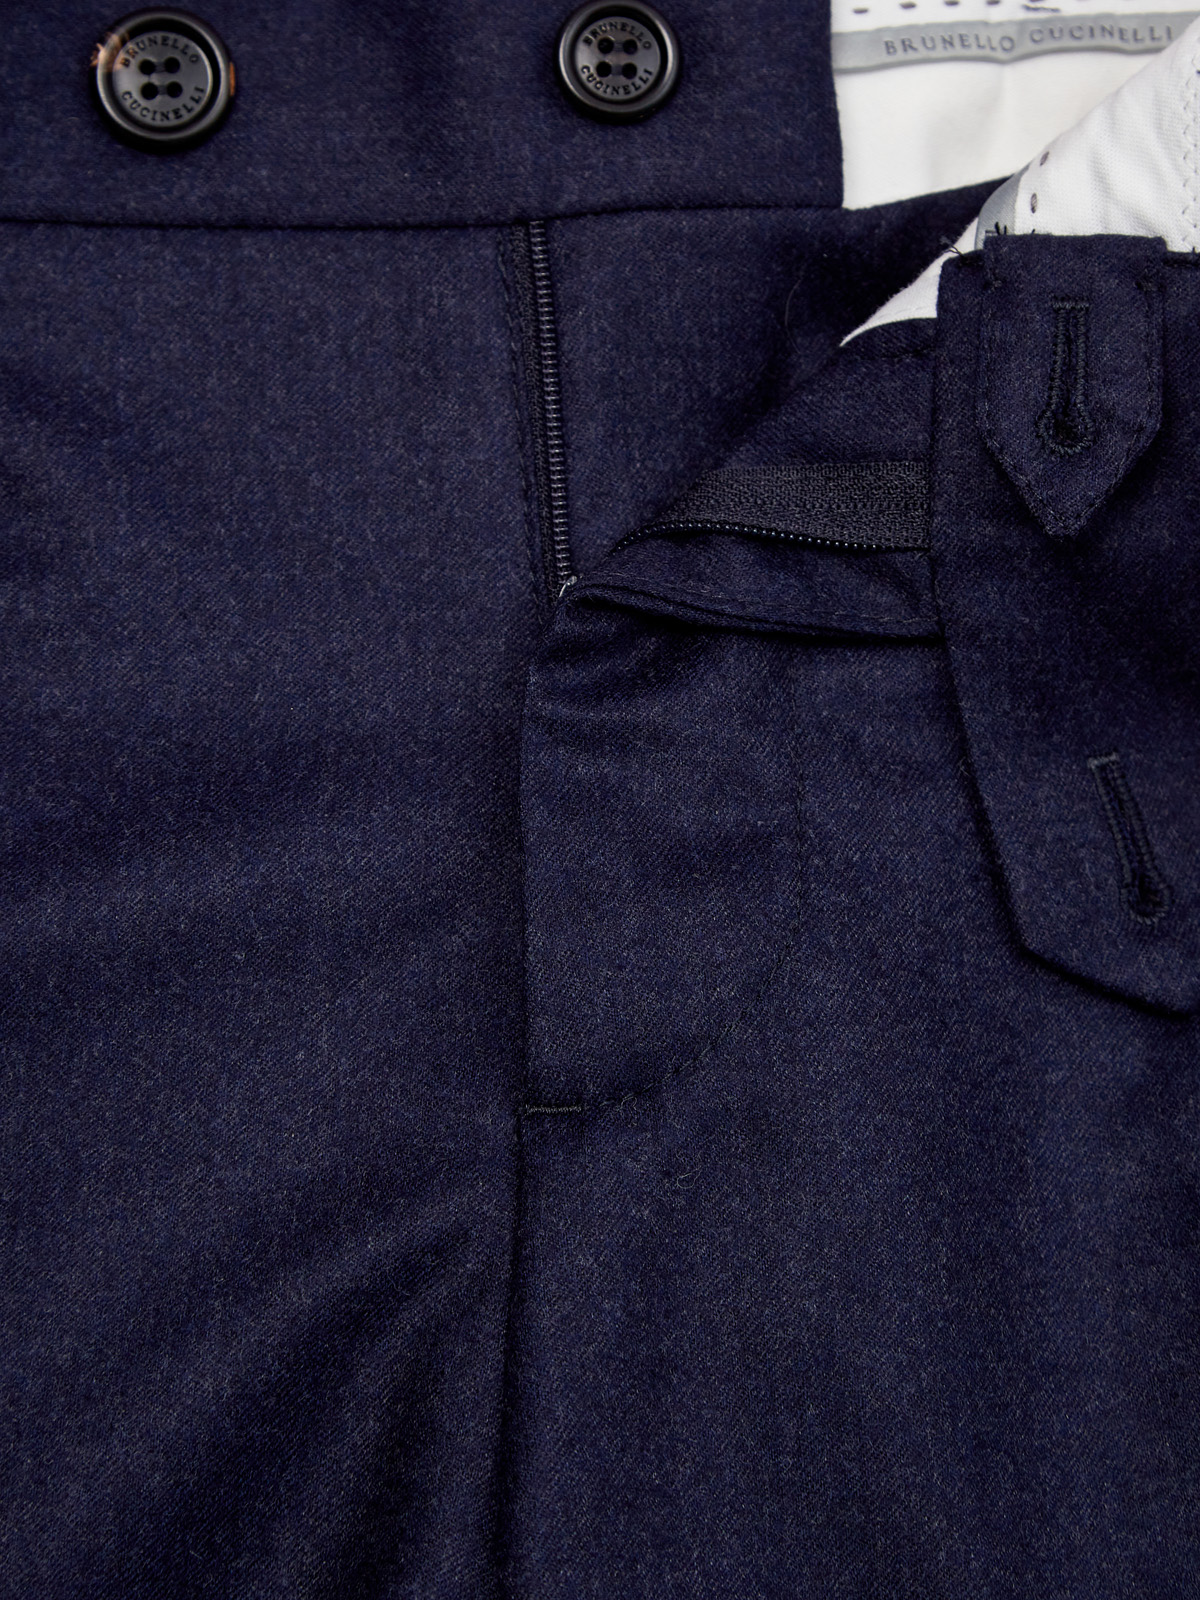 Брюки итальянского кроя из плотной шерстяной фланели BRUNELLO CUCINELLI, цвет синий, размер 46;48;52;54 - фото 6